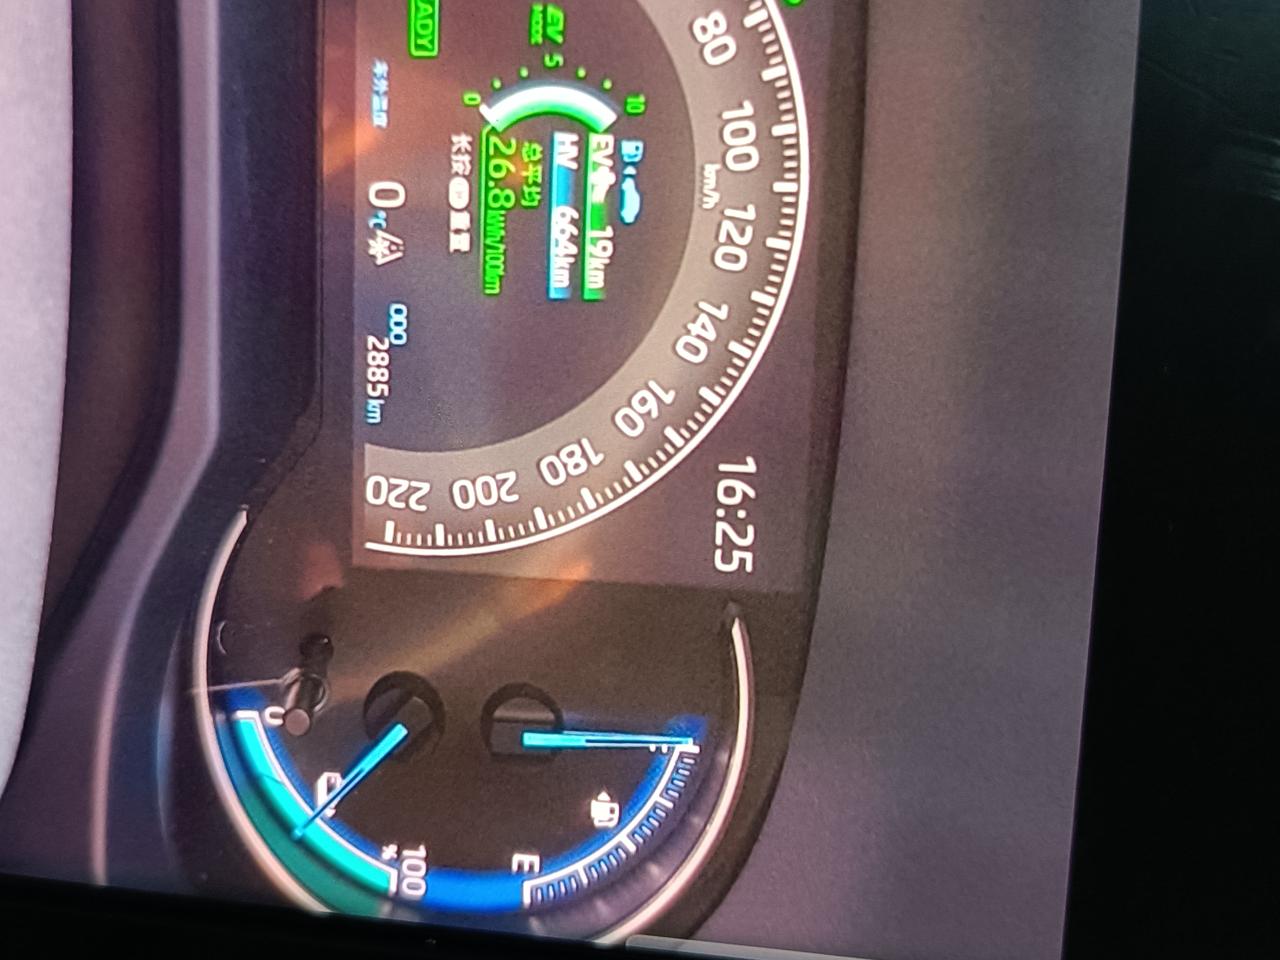 丰田威兰达高性能版 威兰达高性能双驱油加的满满的，续航显示663公里，工信部显示满电满油跑1150公里，不知道各位车友的